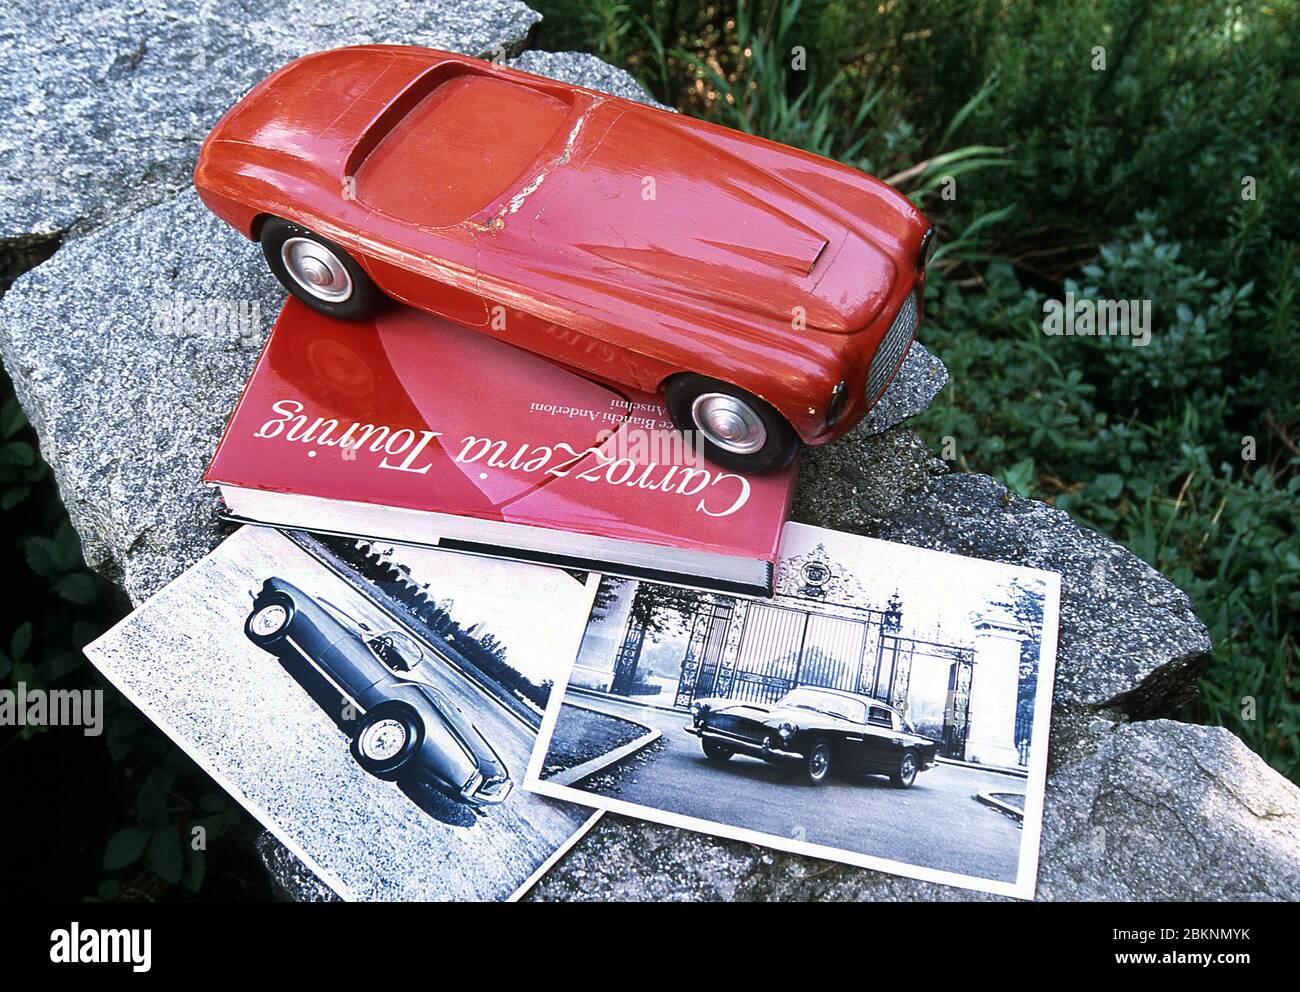 Carrozzeria Touring model of a 1948 model of the Ferrari 166 MM Barchetta  2002 Stock Photo